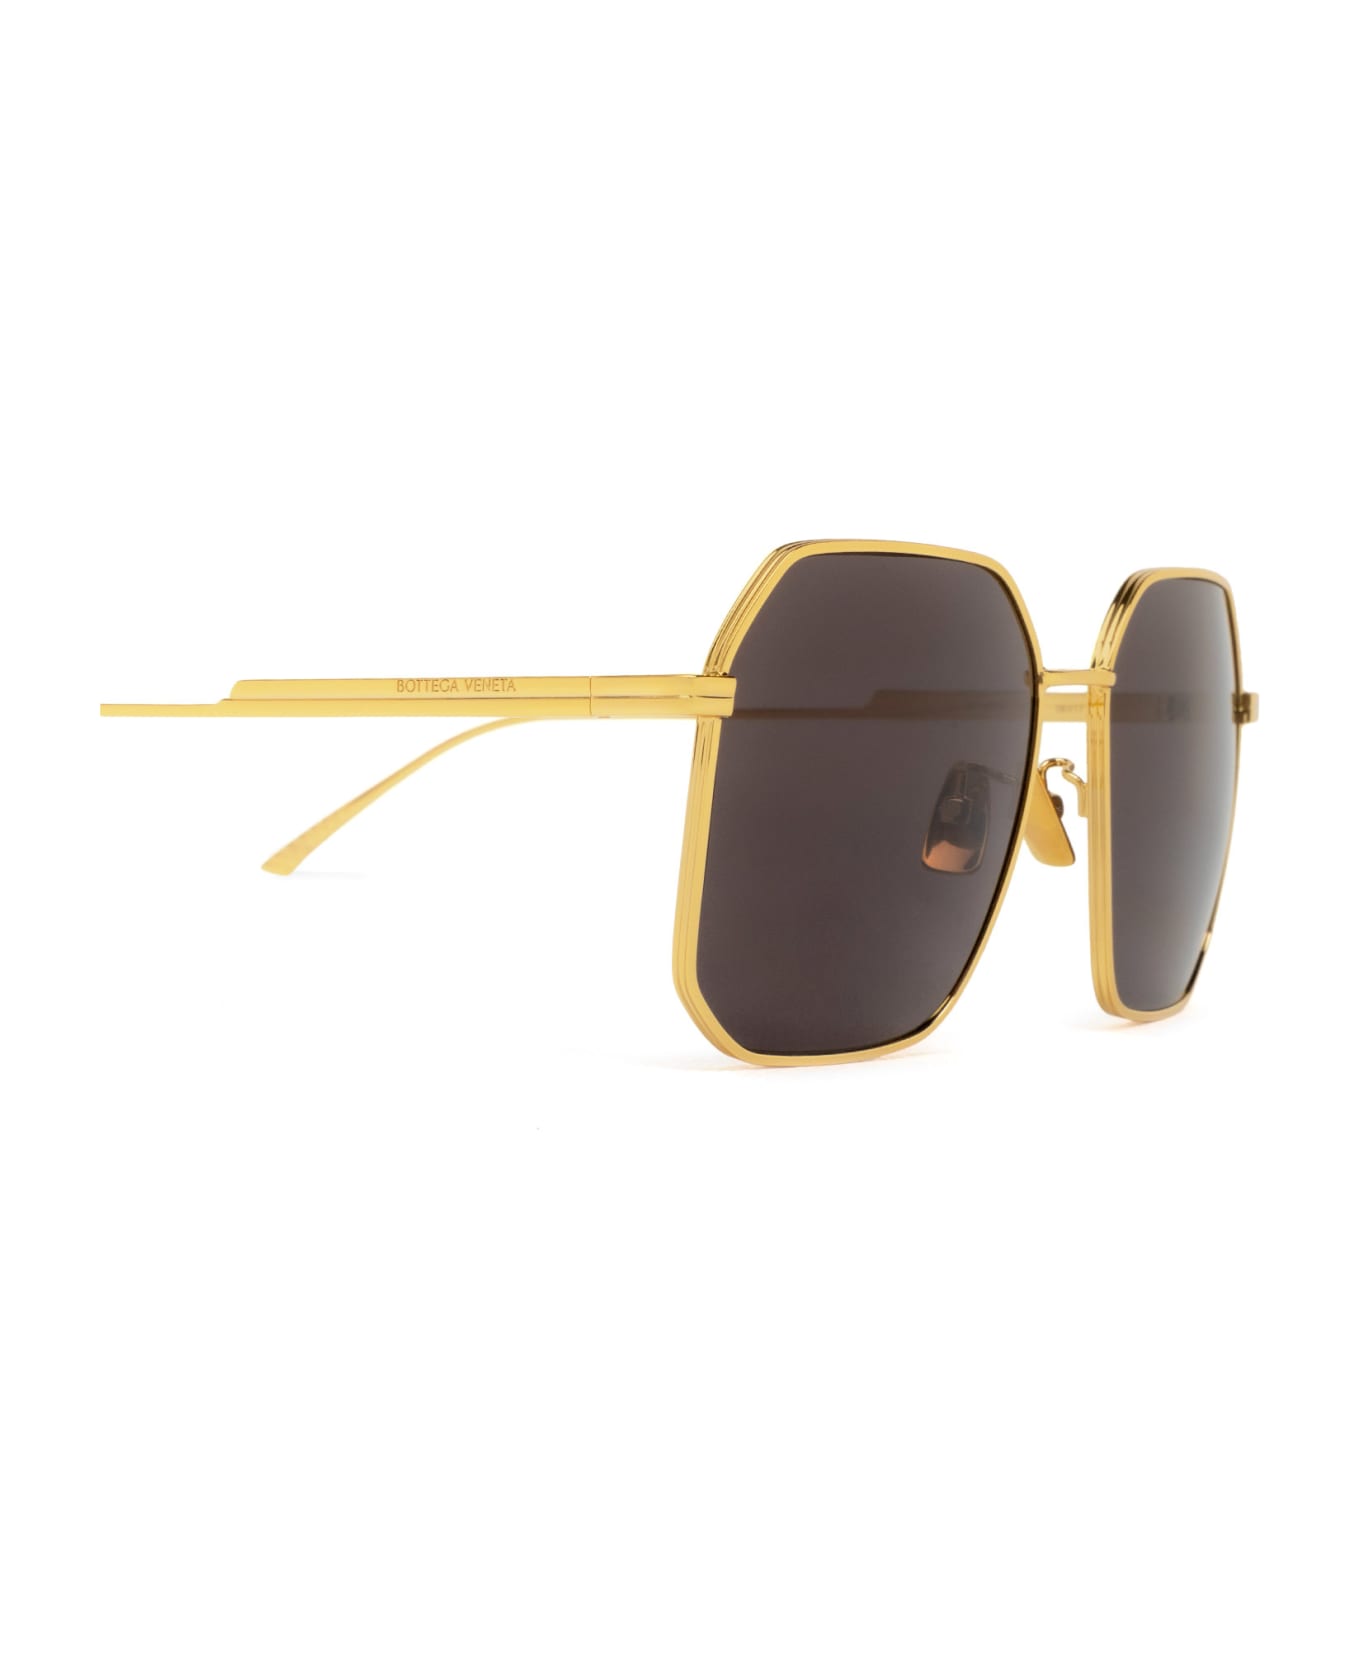 Bottega Veneta Eyewear Bv1108sa Gold Sunglasses - Gold